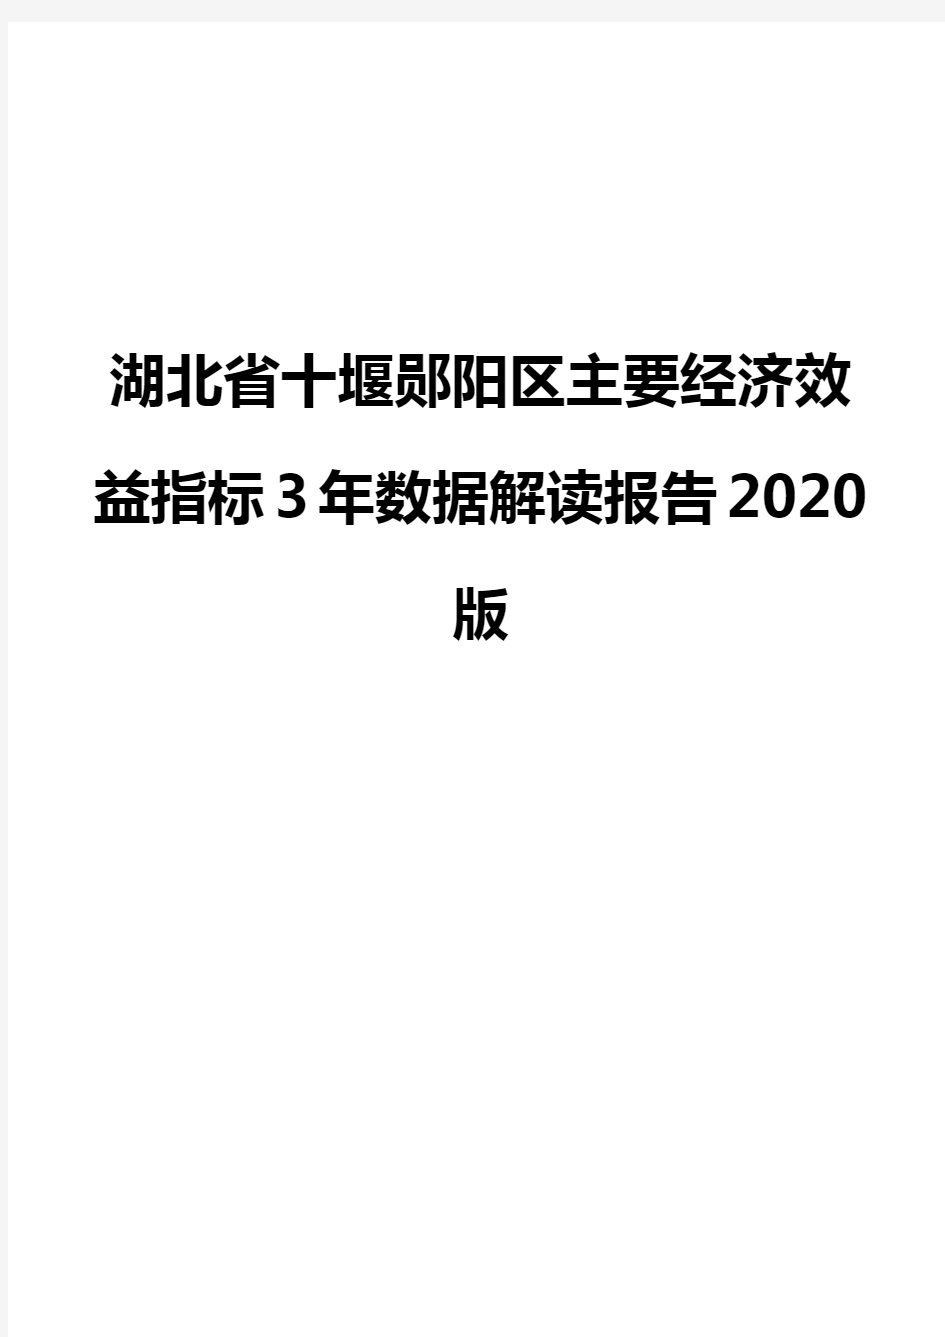 湖北省十堰郧阳区主要经济效益指标3年数据解读报告2020版